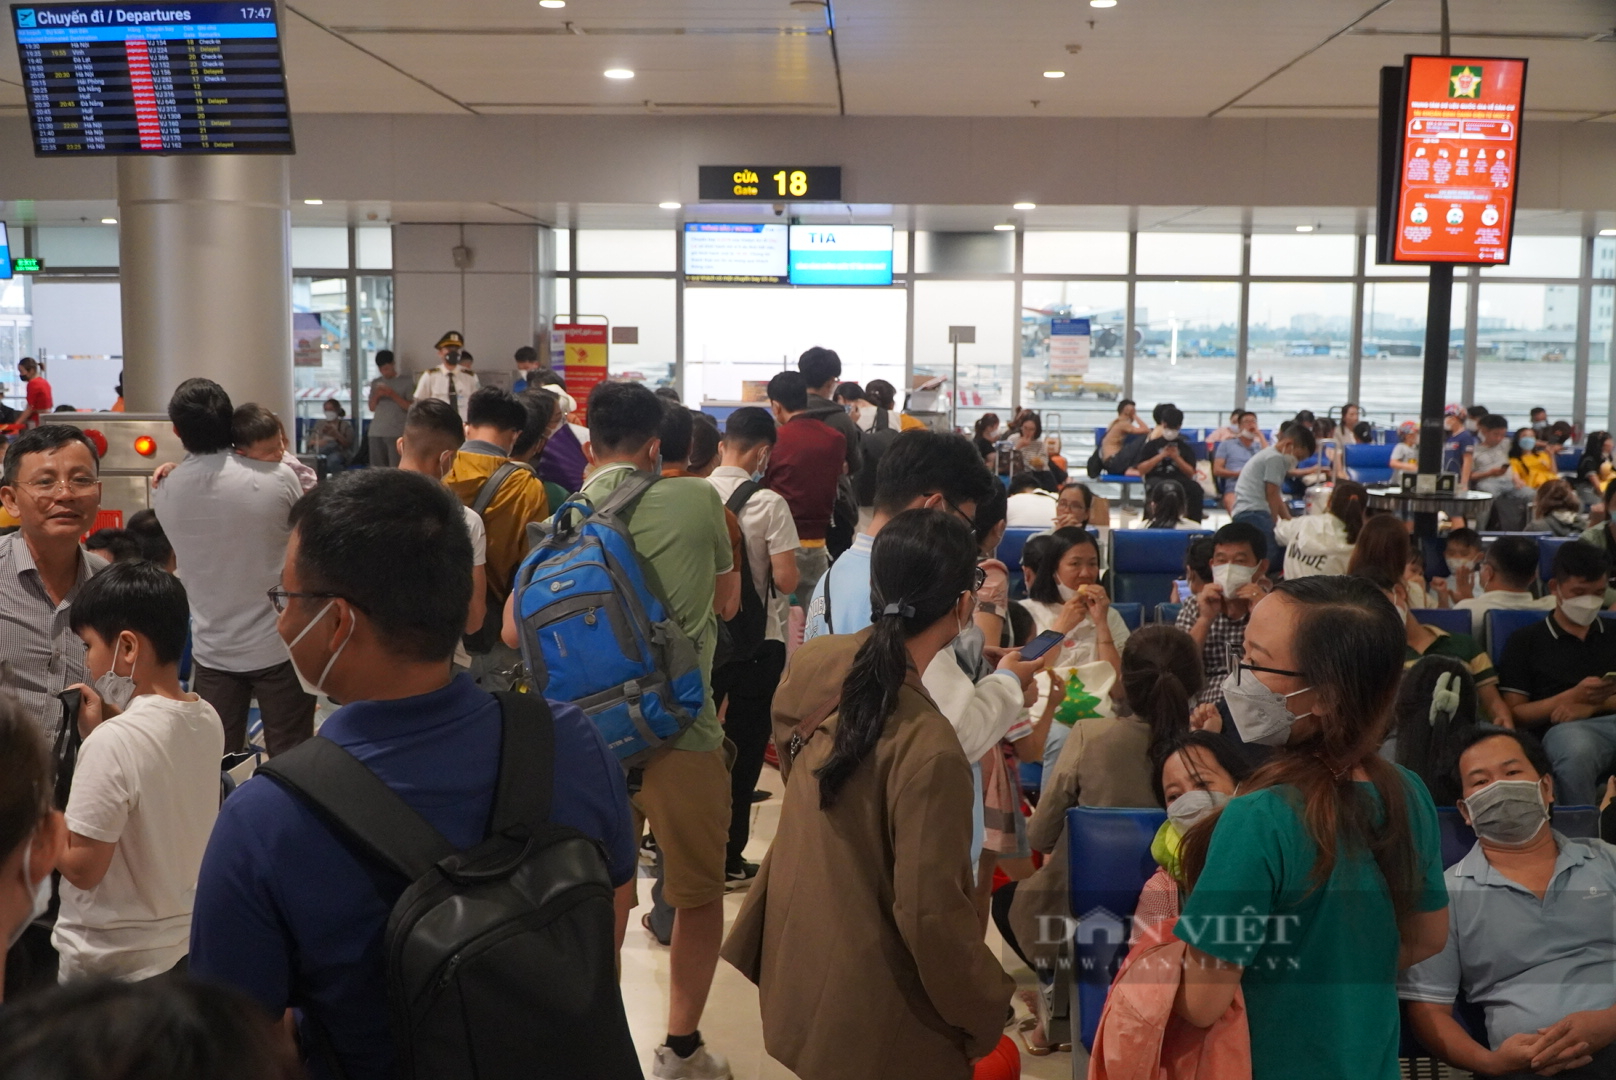 Tiếp tục các giải pháp kéo giảm ùn tắc tại sân bay Tân Sơn Nhất - Ảnh 1.